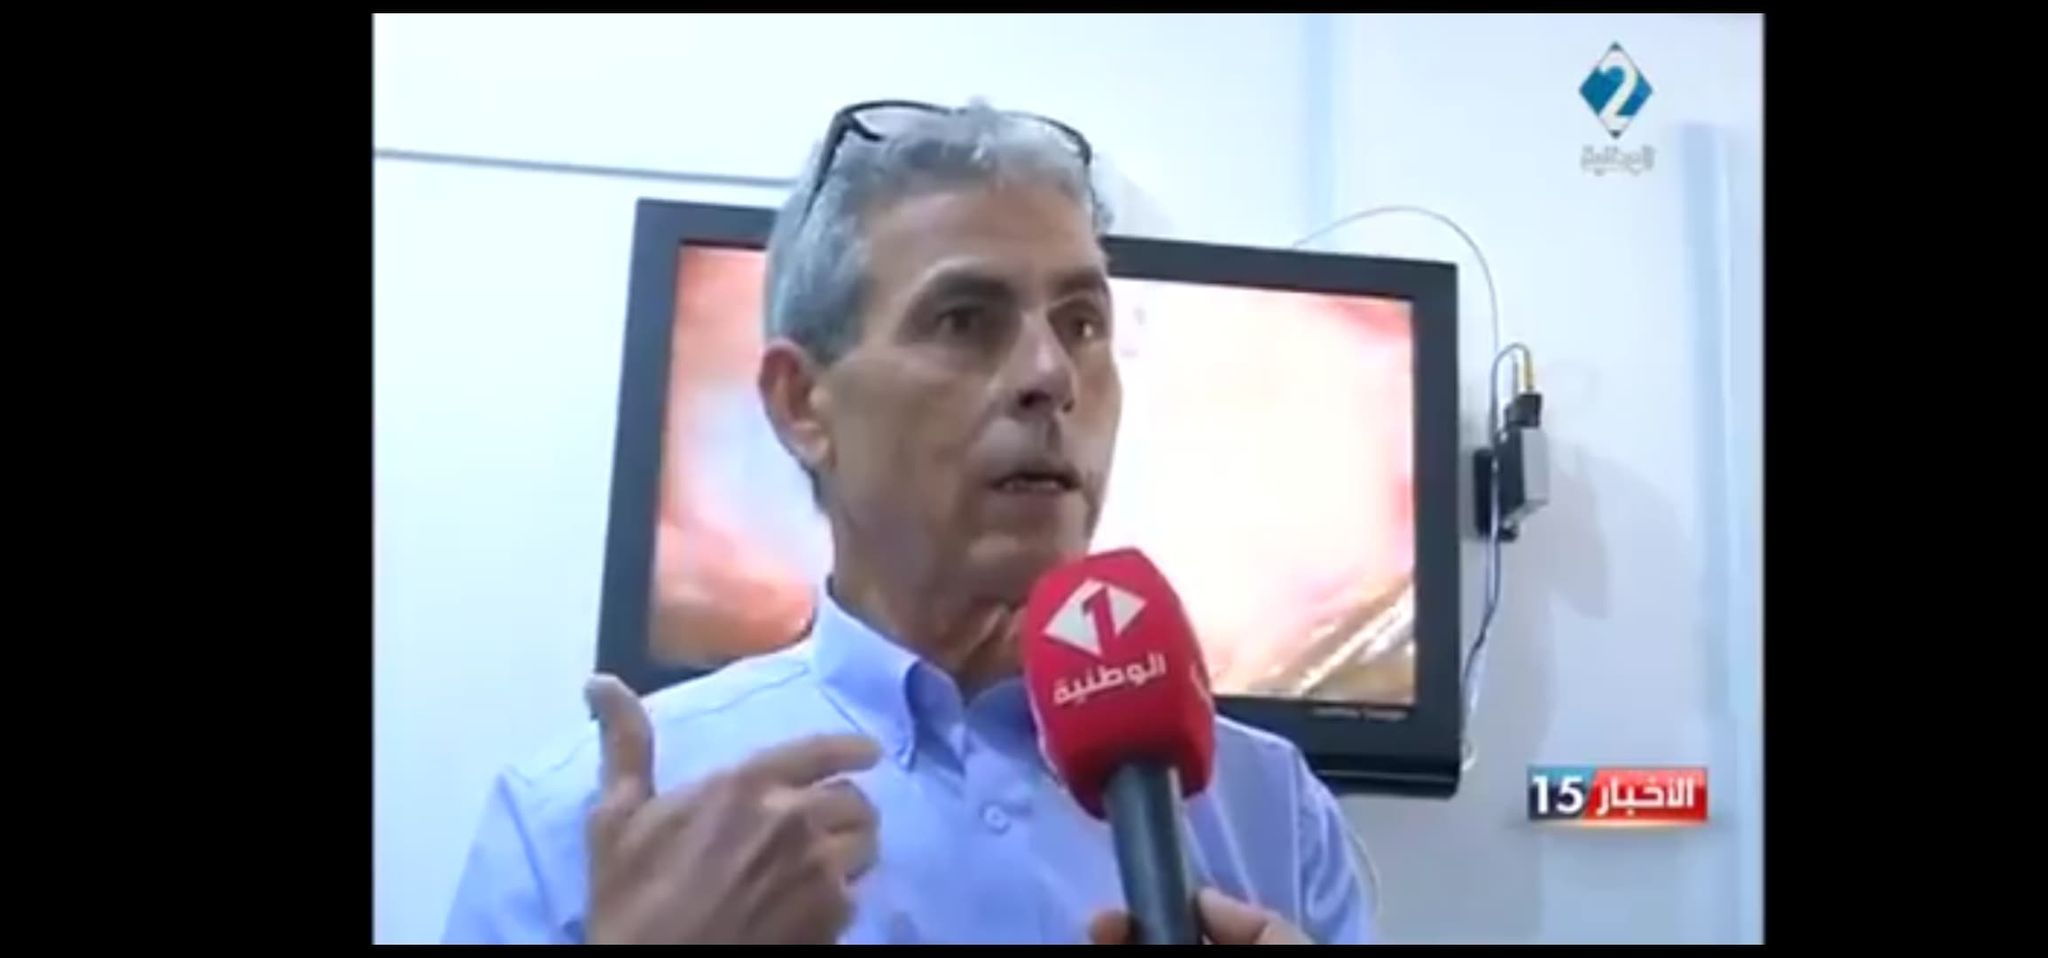 المحرس: "رضوان الرميلي".. رئيس "جمعية التونسيين مان إي لوار" بمدينة أنجي الفرنسية في ذمة ﷲ